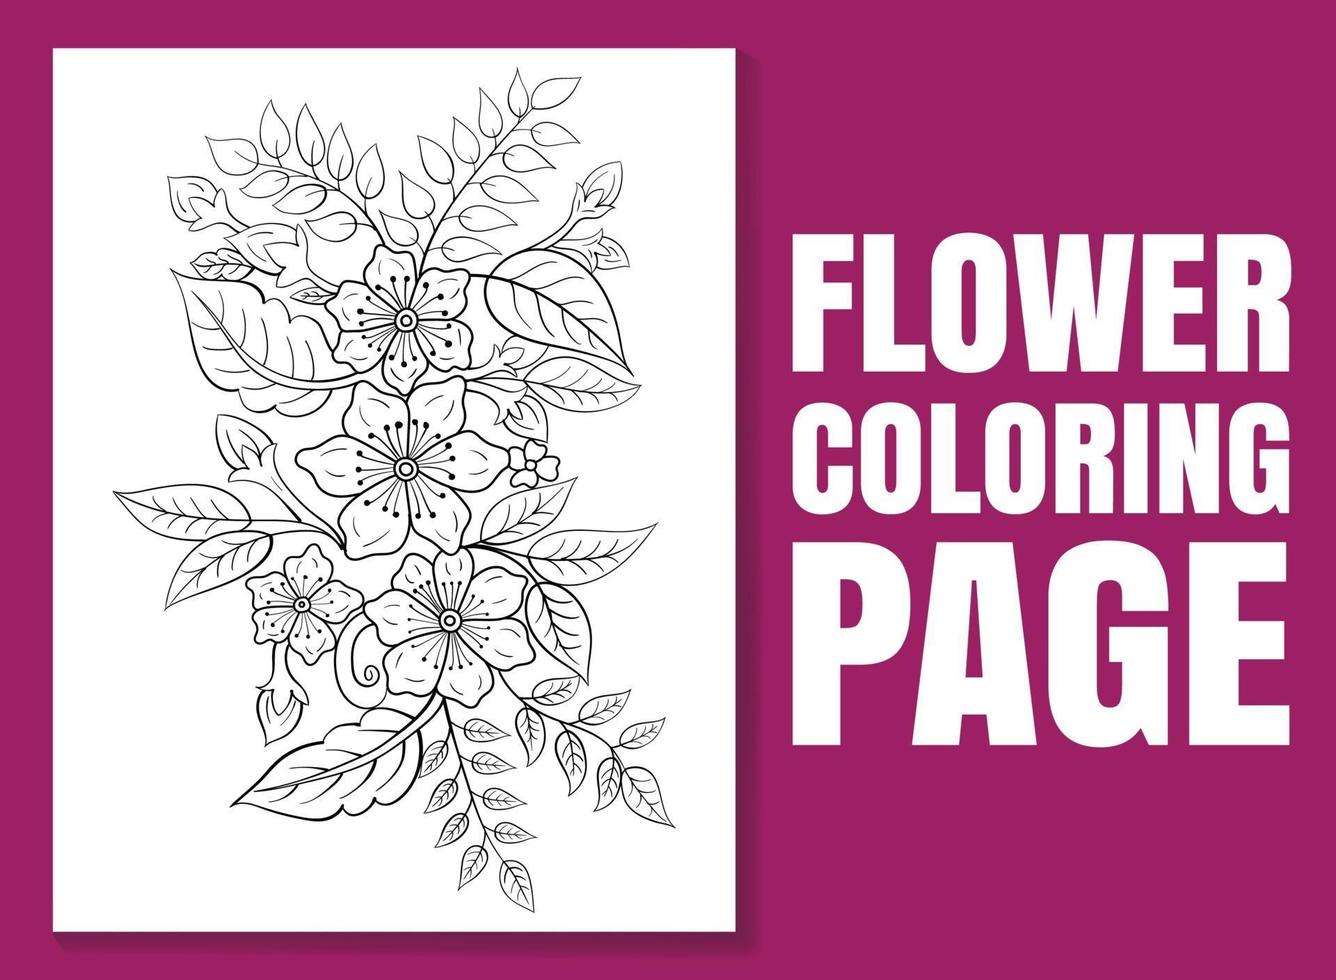 bloem kleurplaat. kleurboekpagina voor volwassenen en kinderen. vector